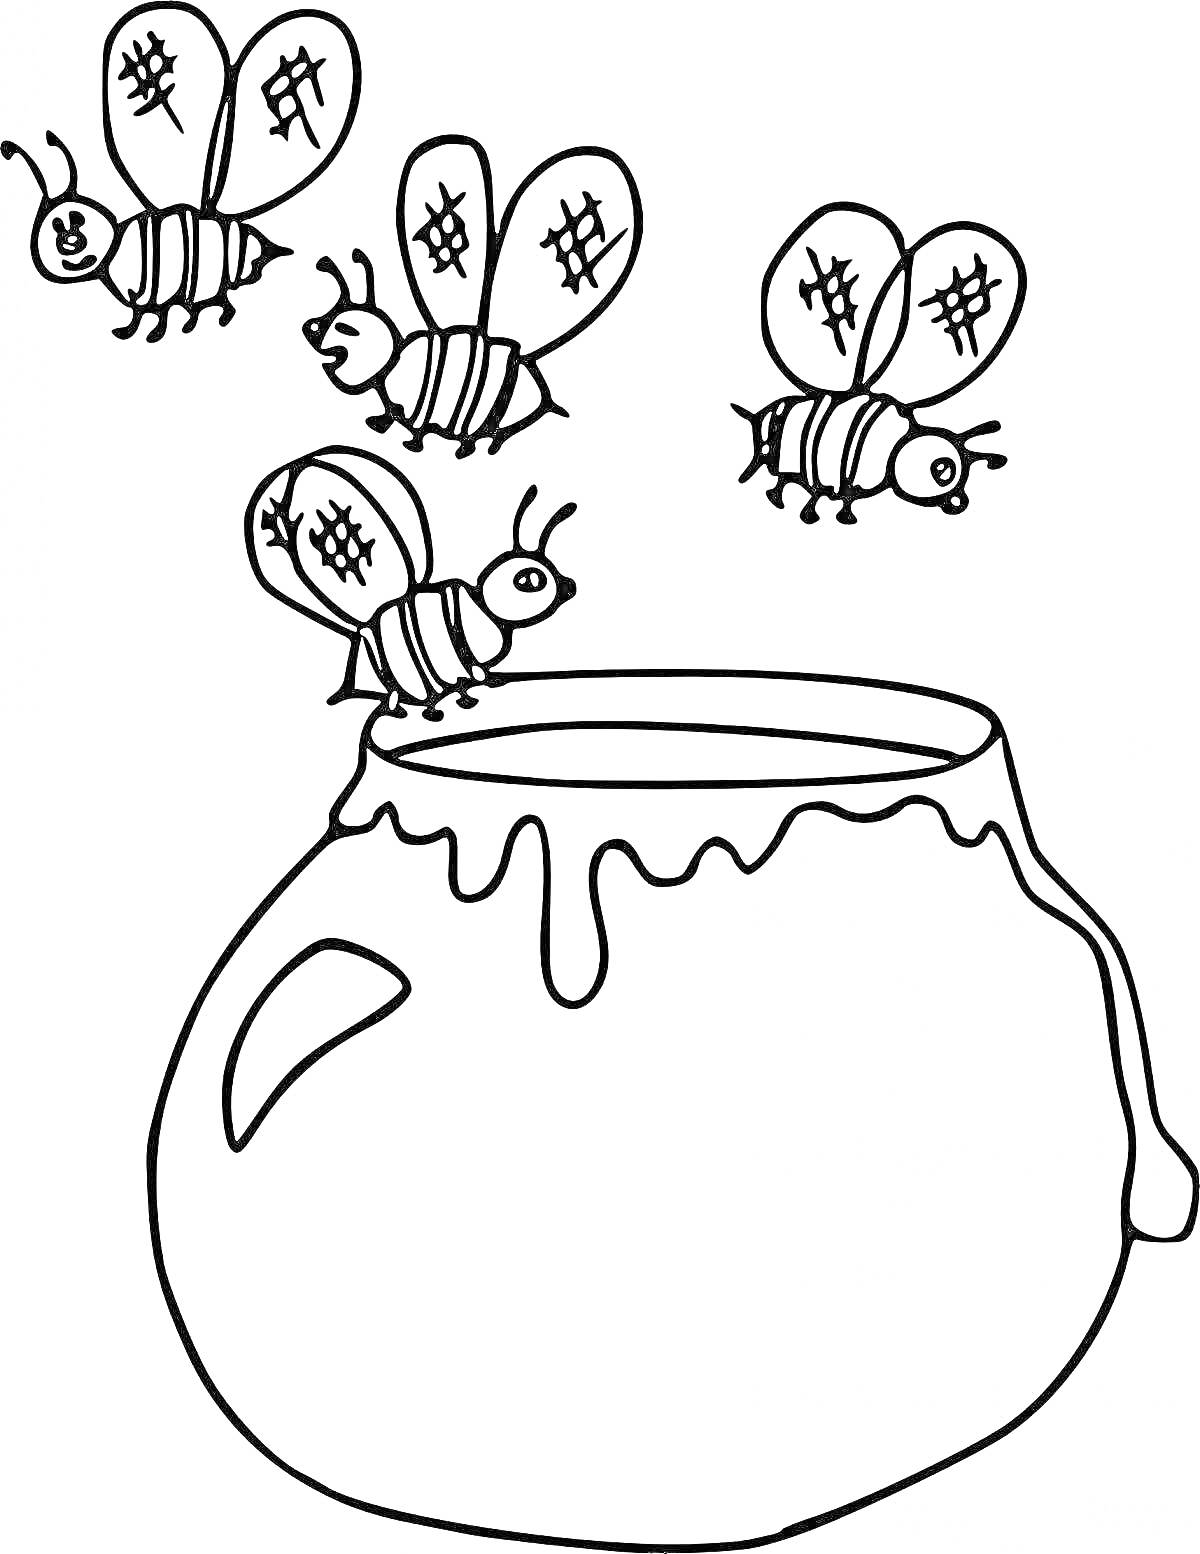 Раскраска Три пчелы возле горшка с медом